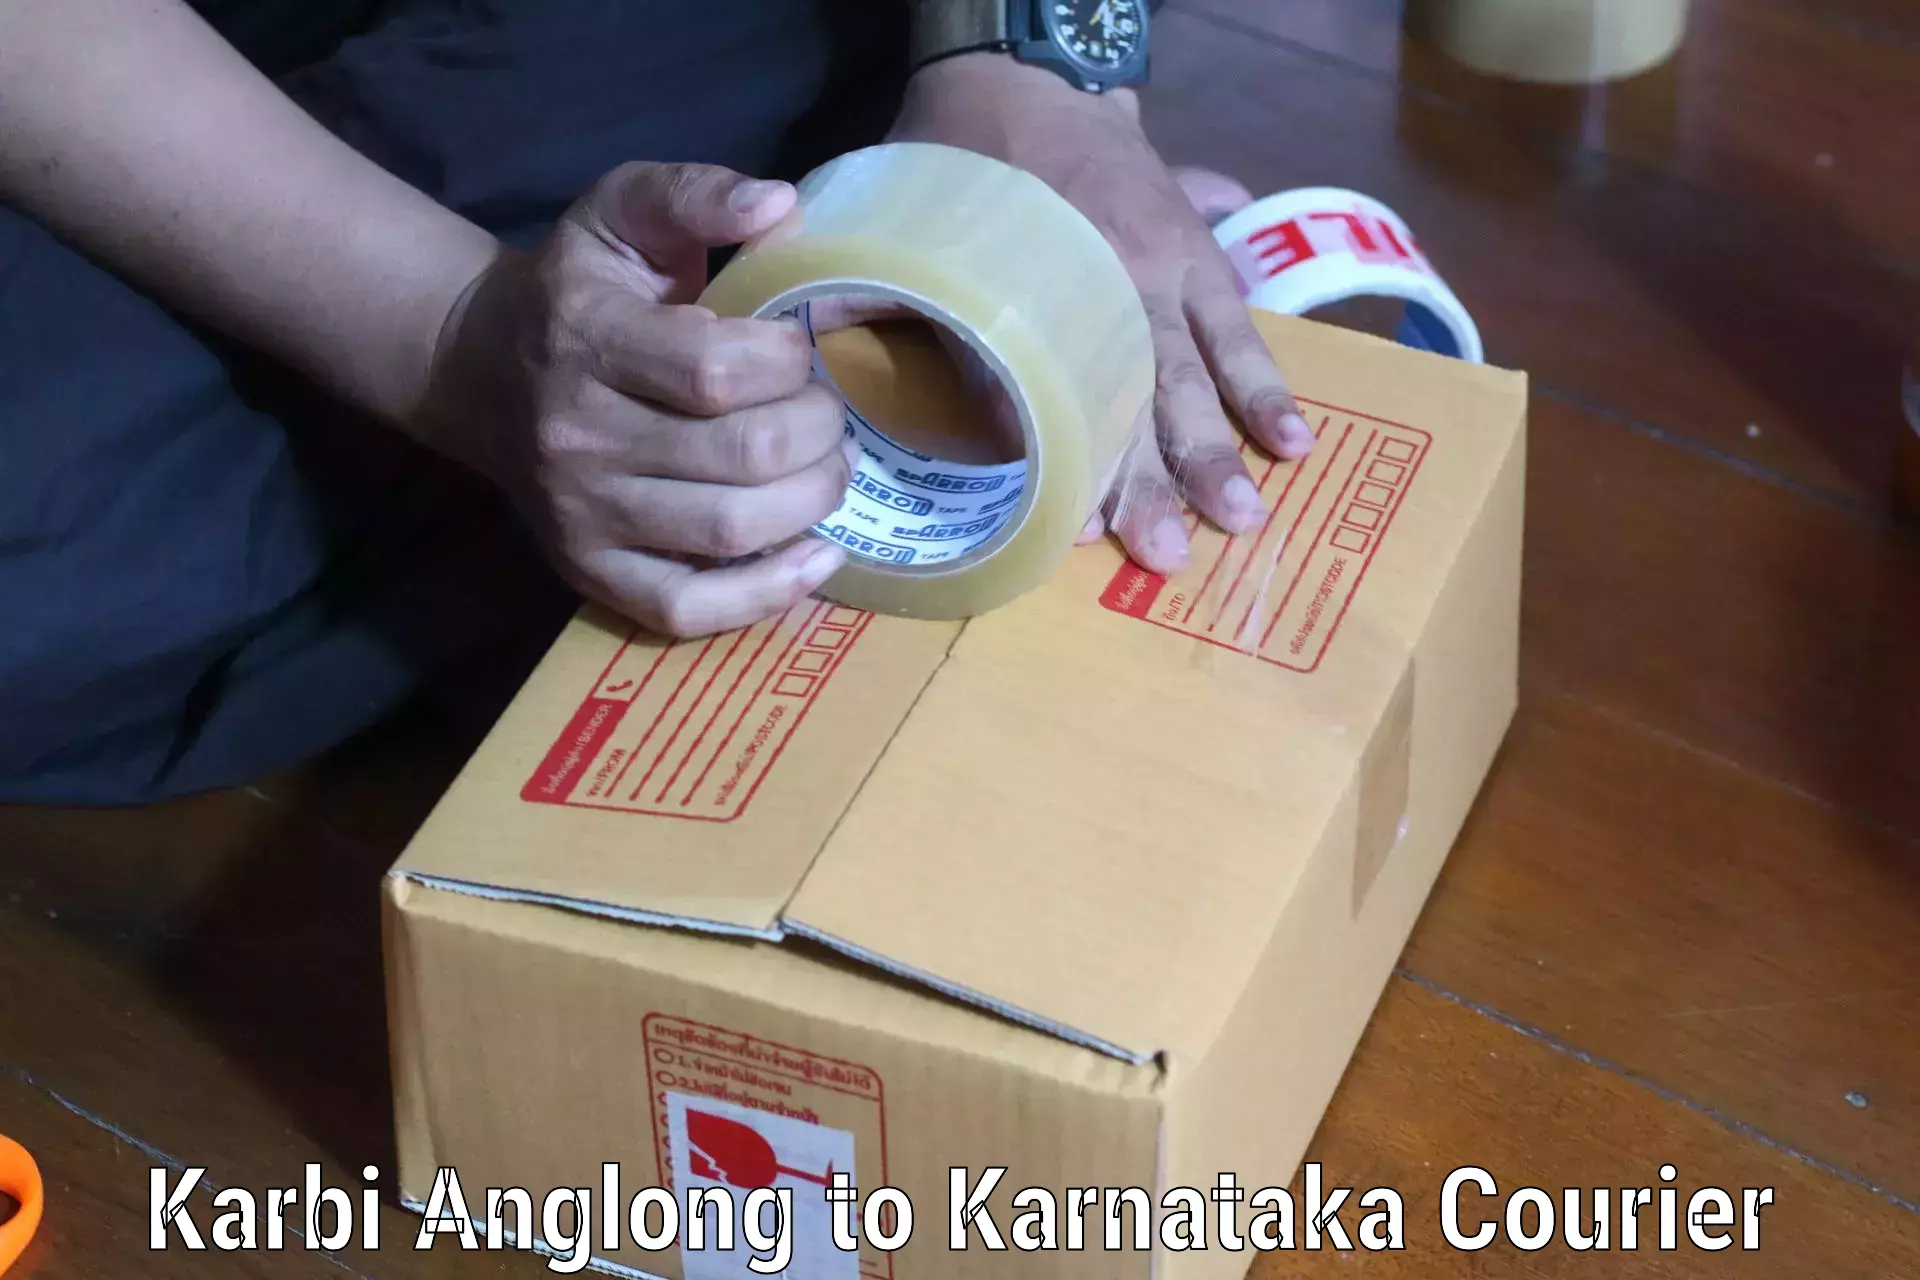 Reliable logistics providers Karbi Anglong to Channarayapatna